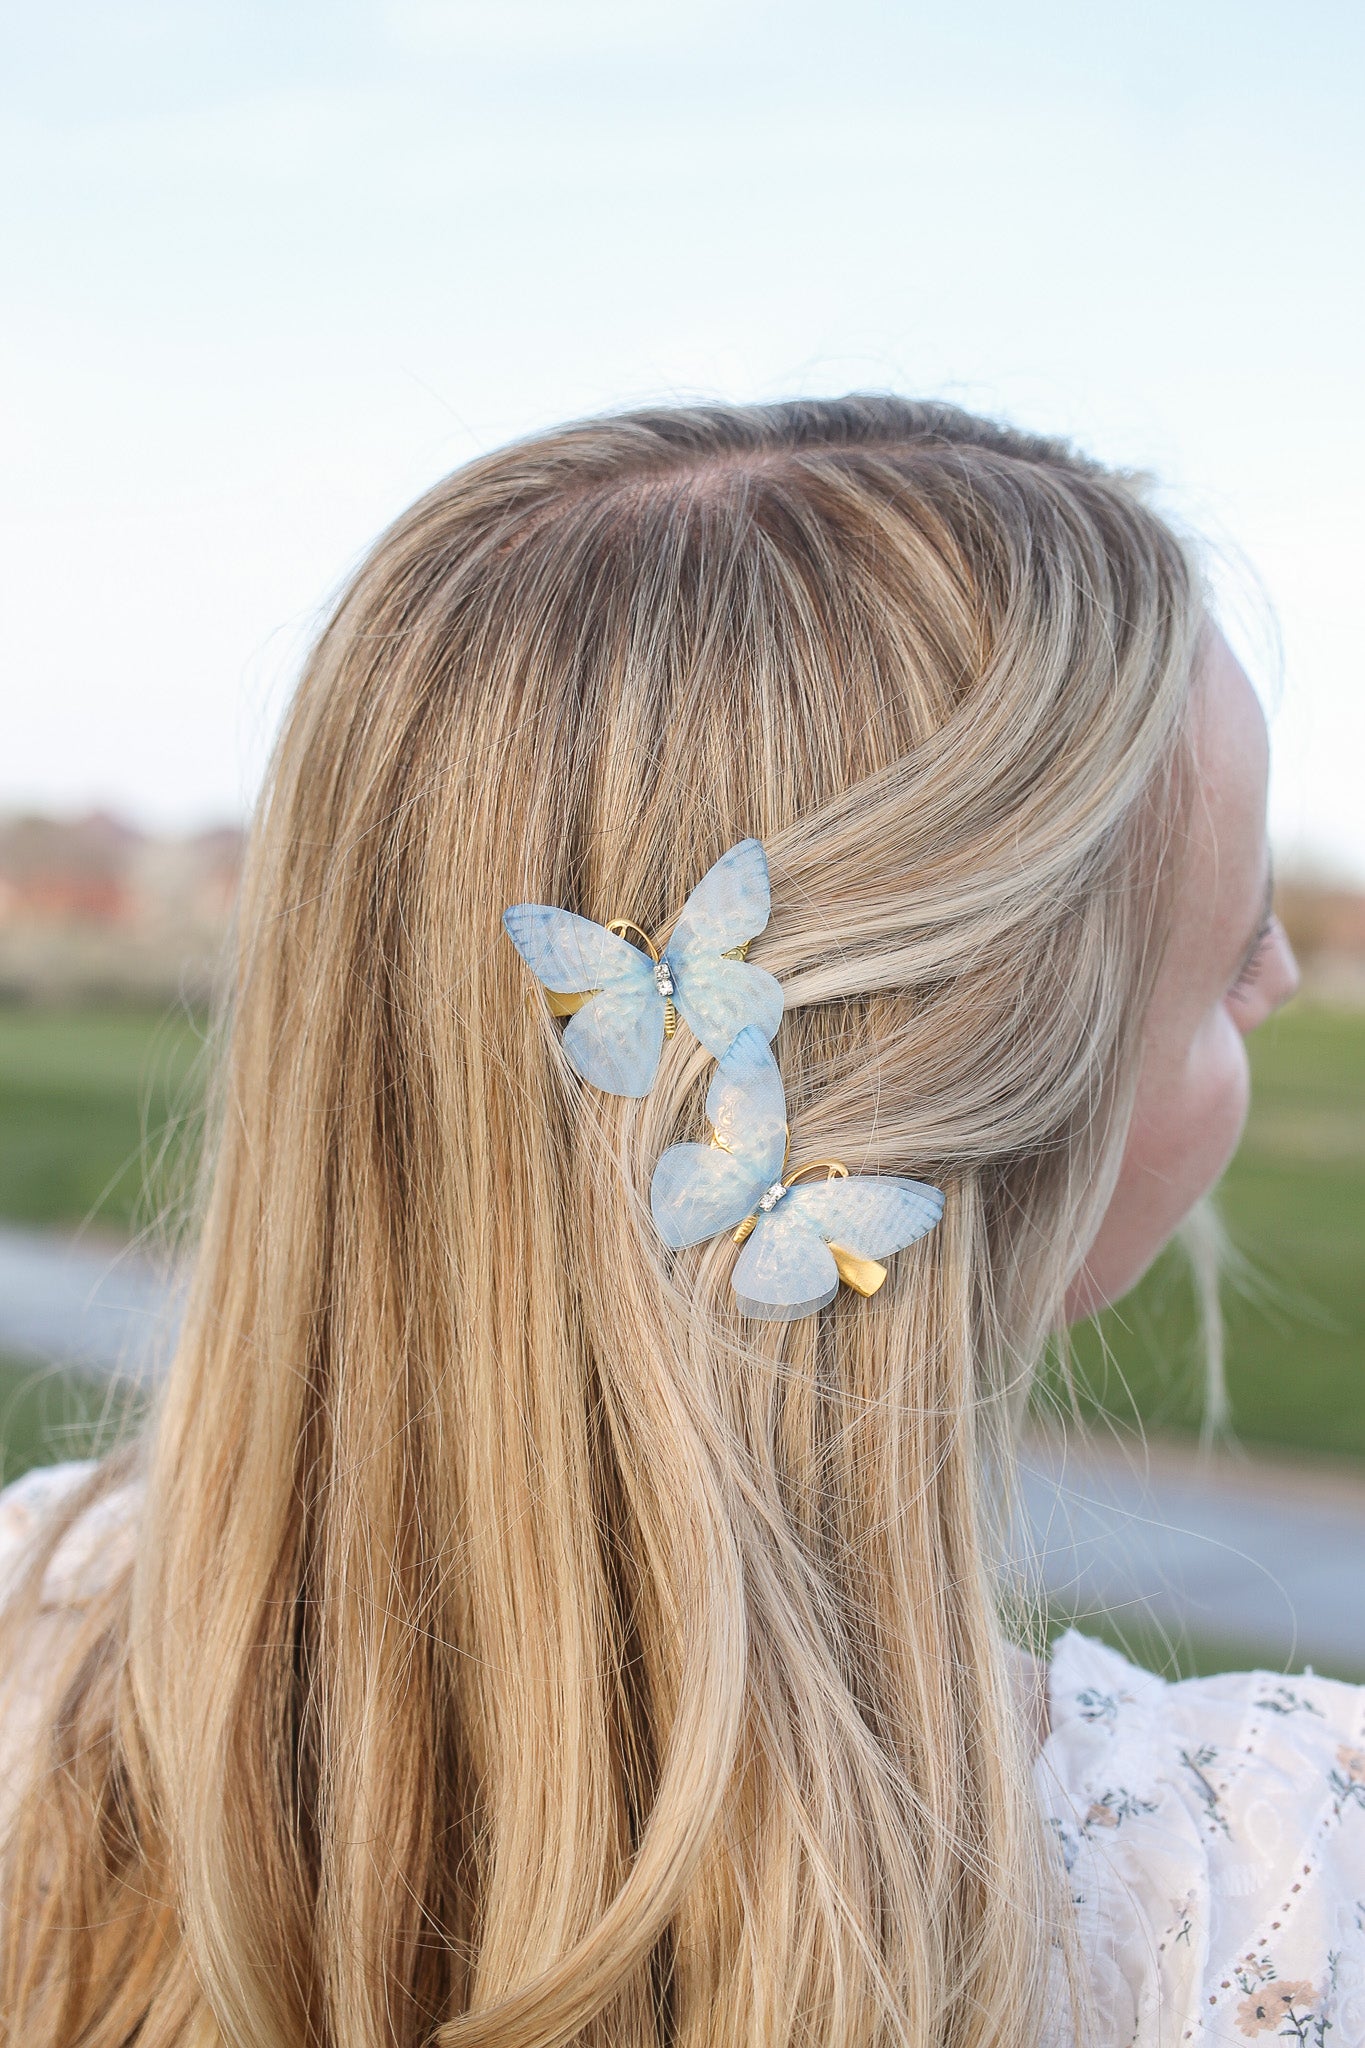 Butterfly Wings Hair Clips in Blue